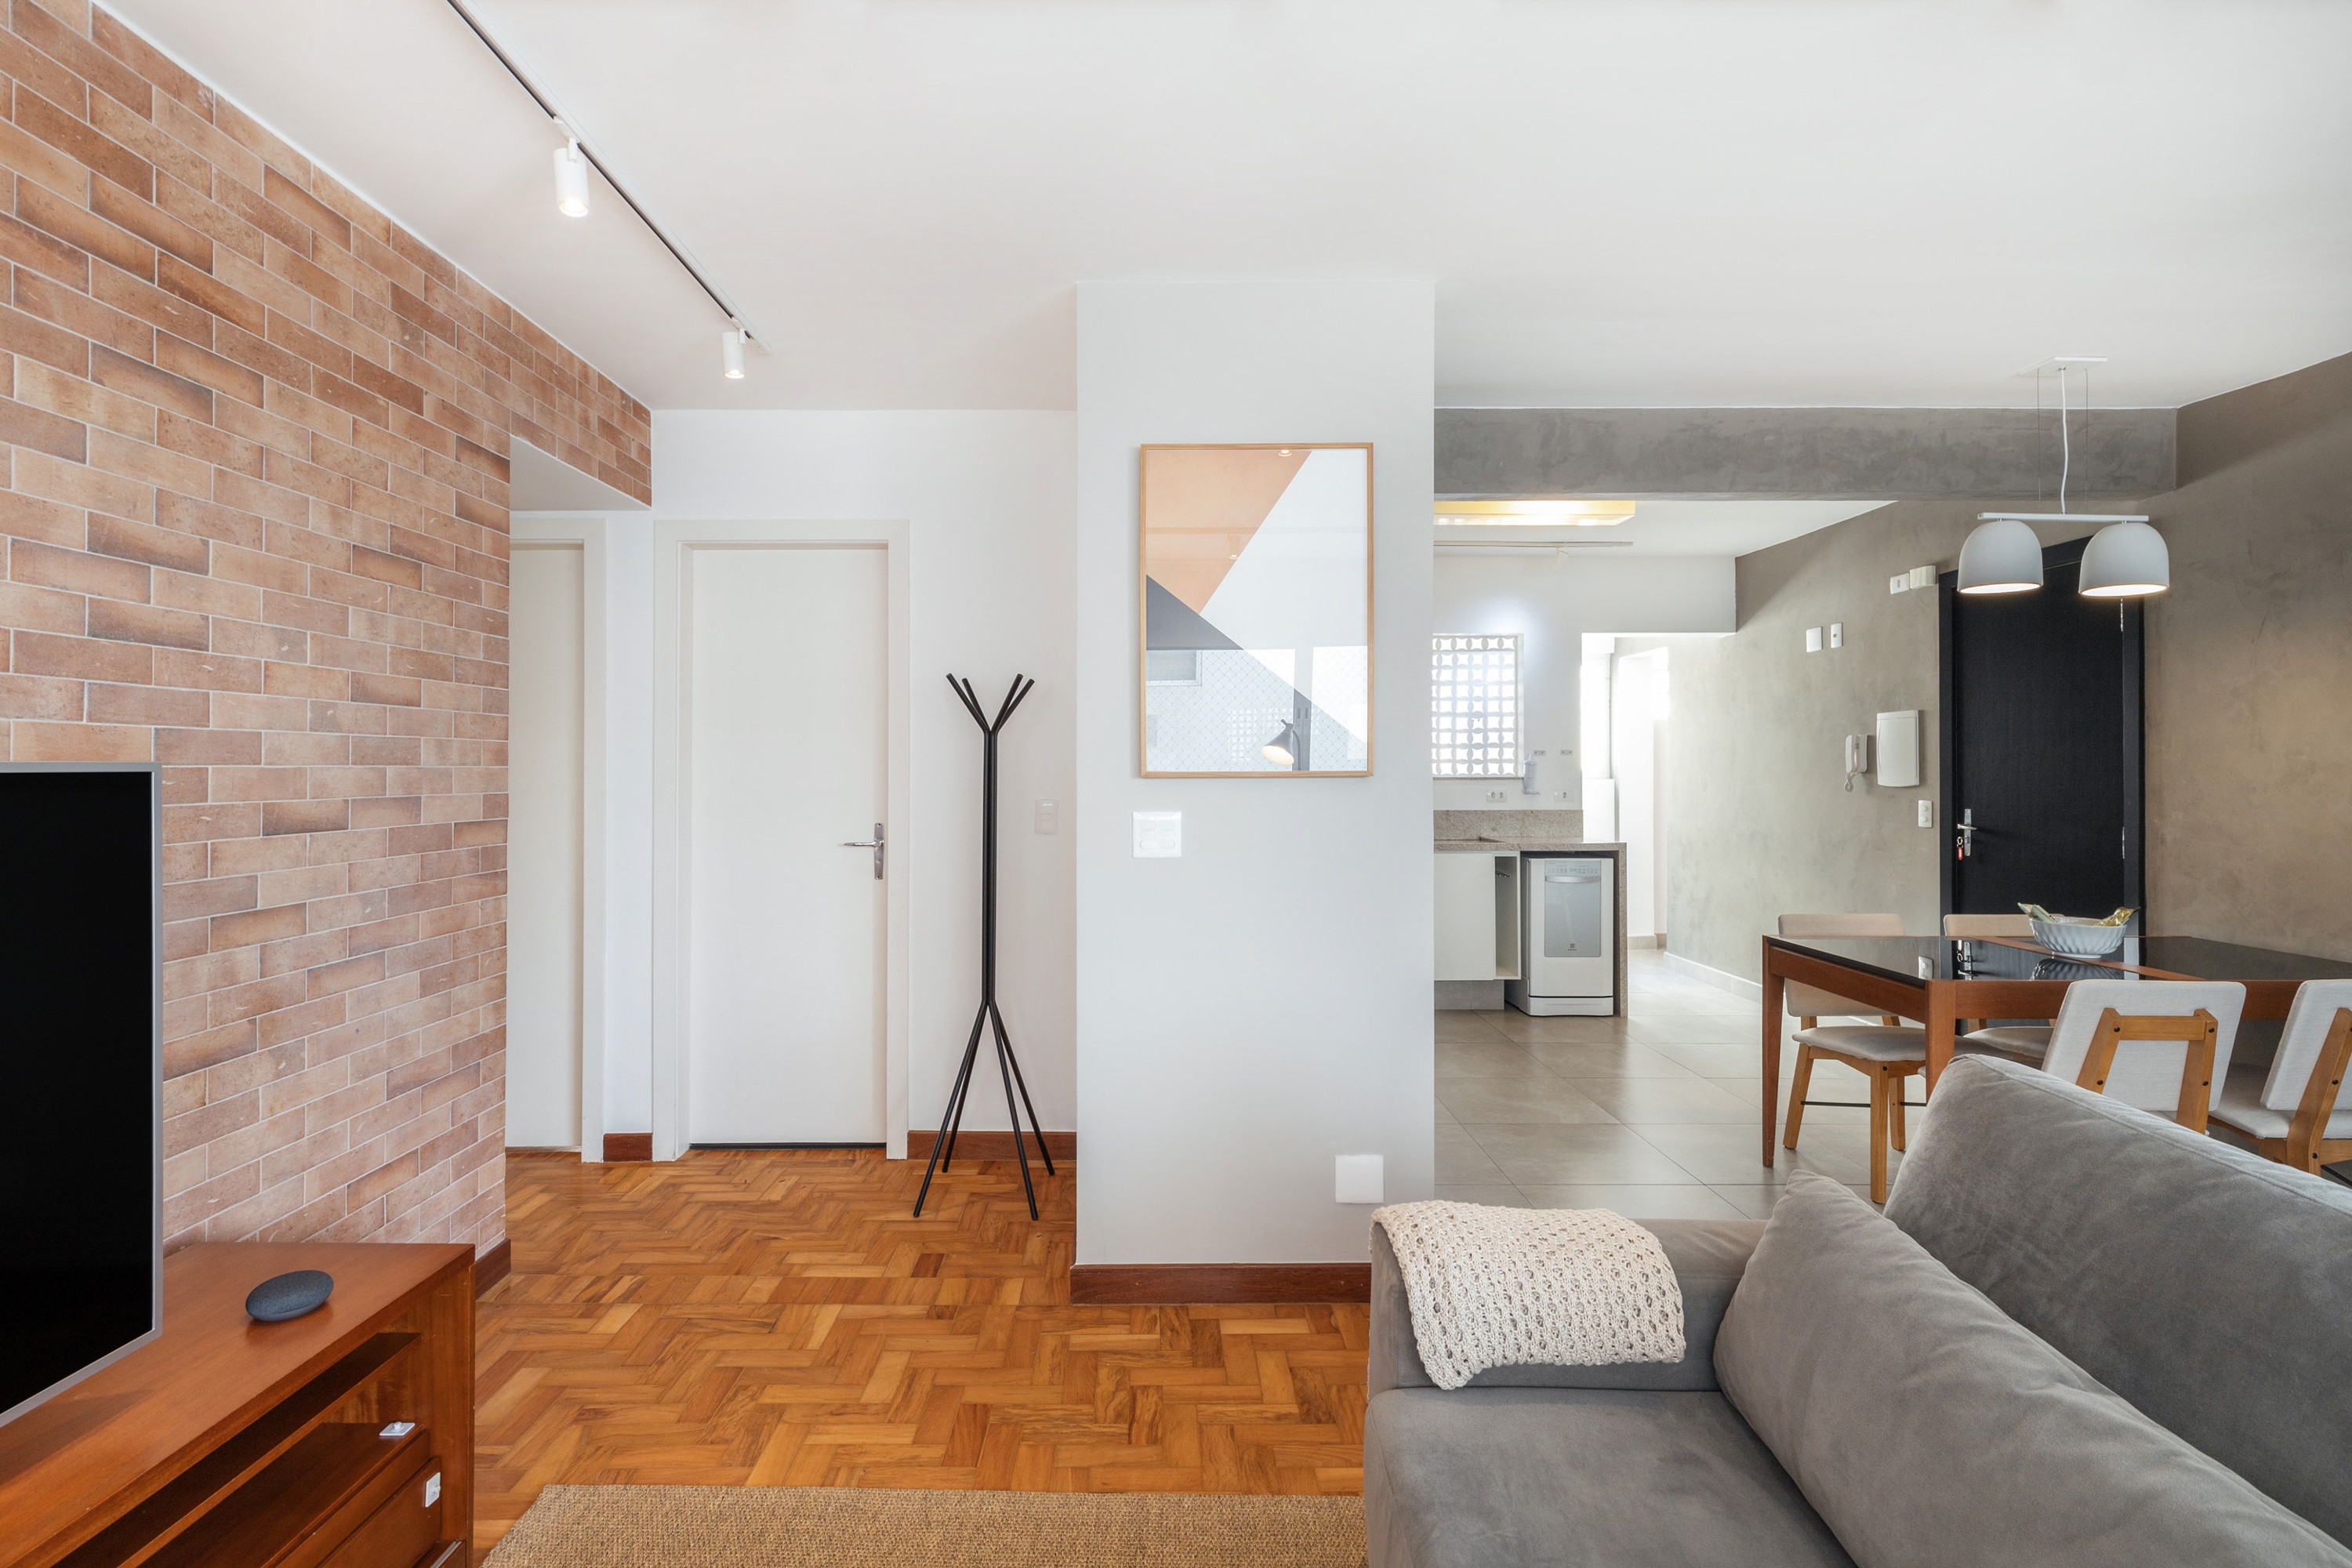 Apartamento pequeno: dicas para mobiliar e criar ambientes multifuncionais (Foto: Divulgação/Casai)